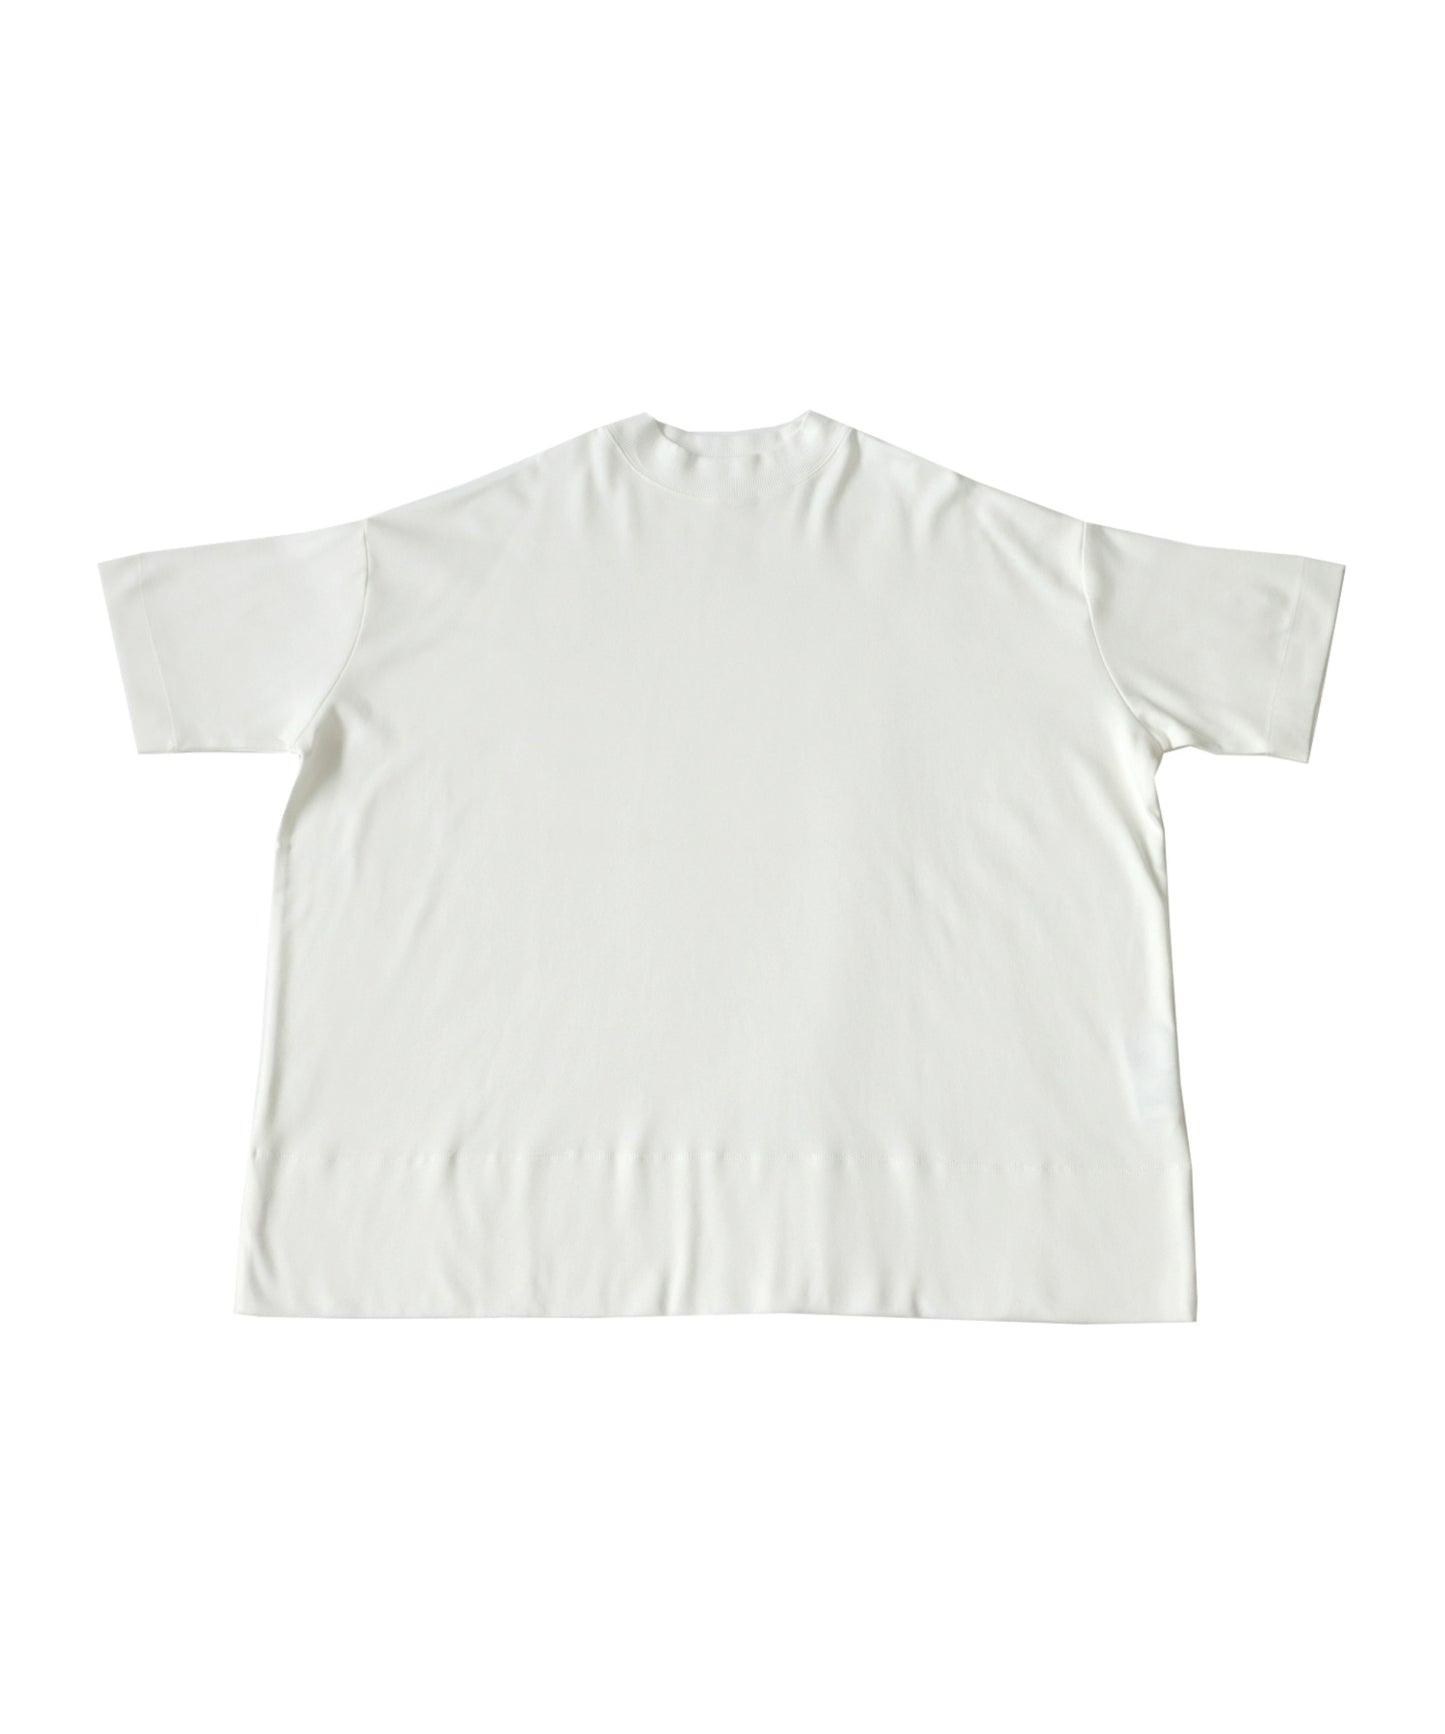 Smooth WoMen's T -shirt Short-Sleeve plain